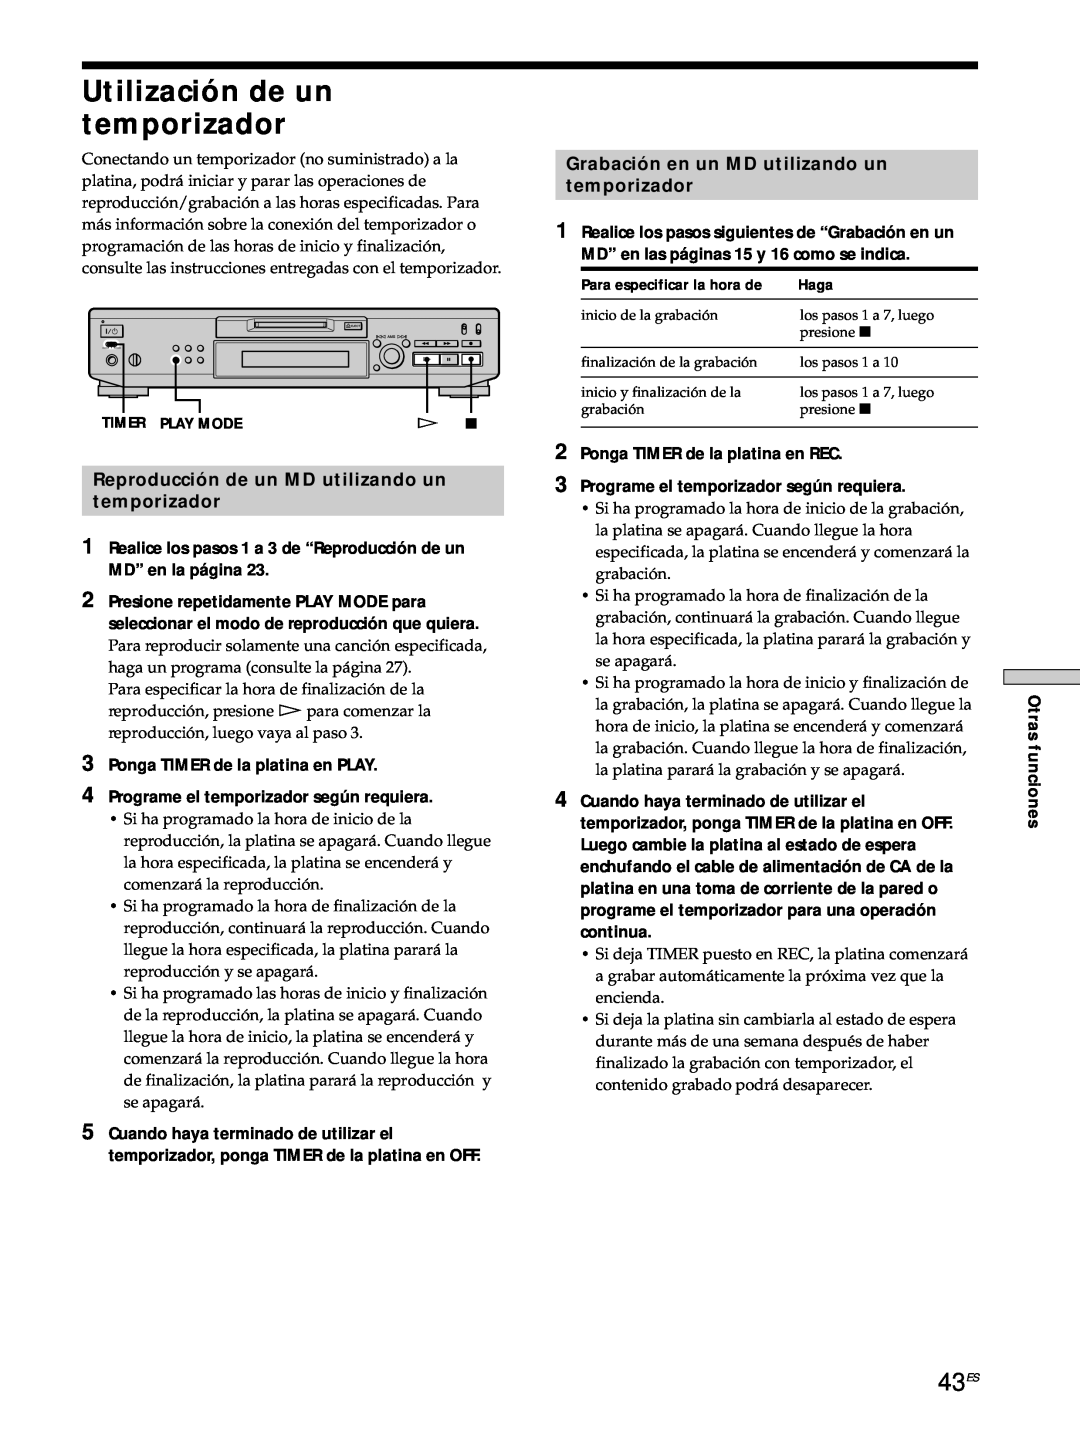 Sony MDS-JE530 manual Utilización de un temporizador, 43ES, Reproducción de un MD utilizando un temporizador 